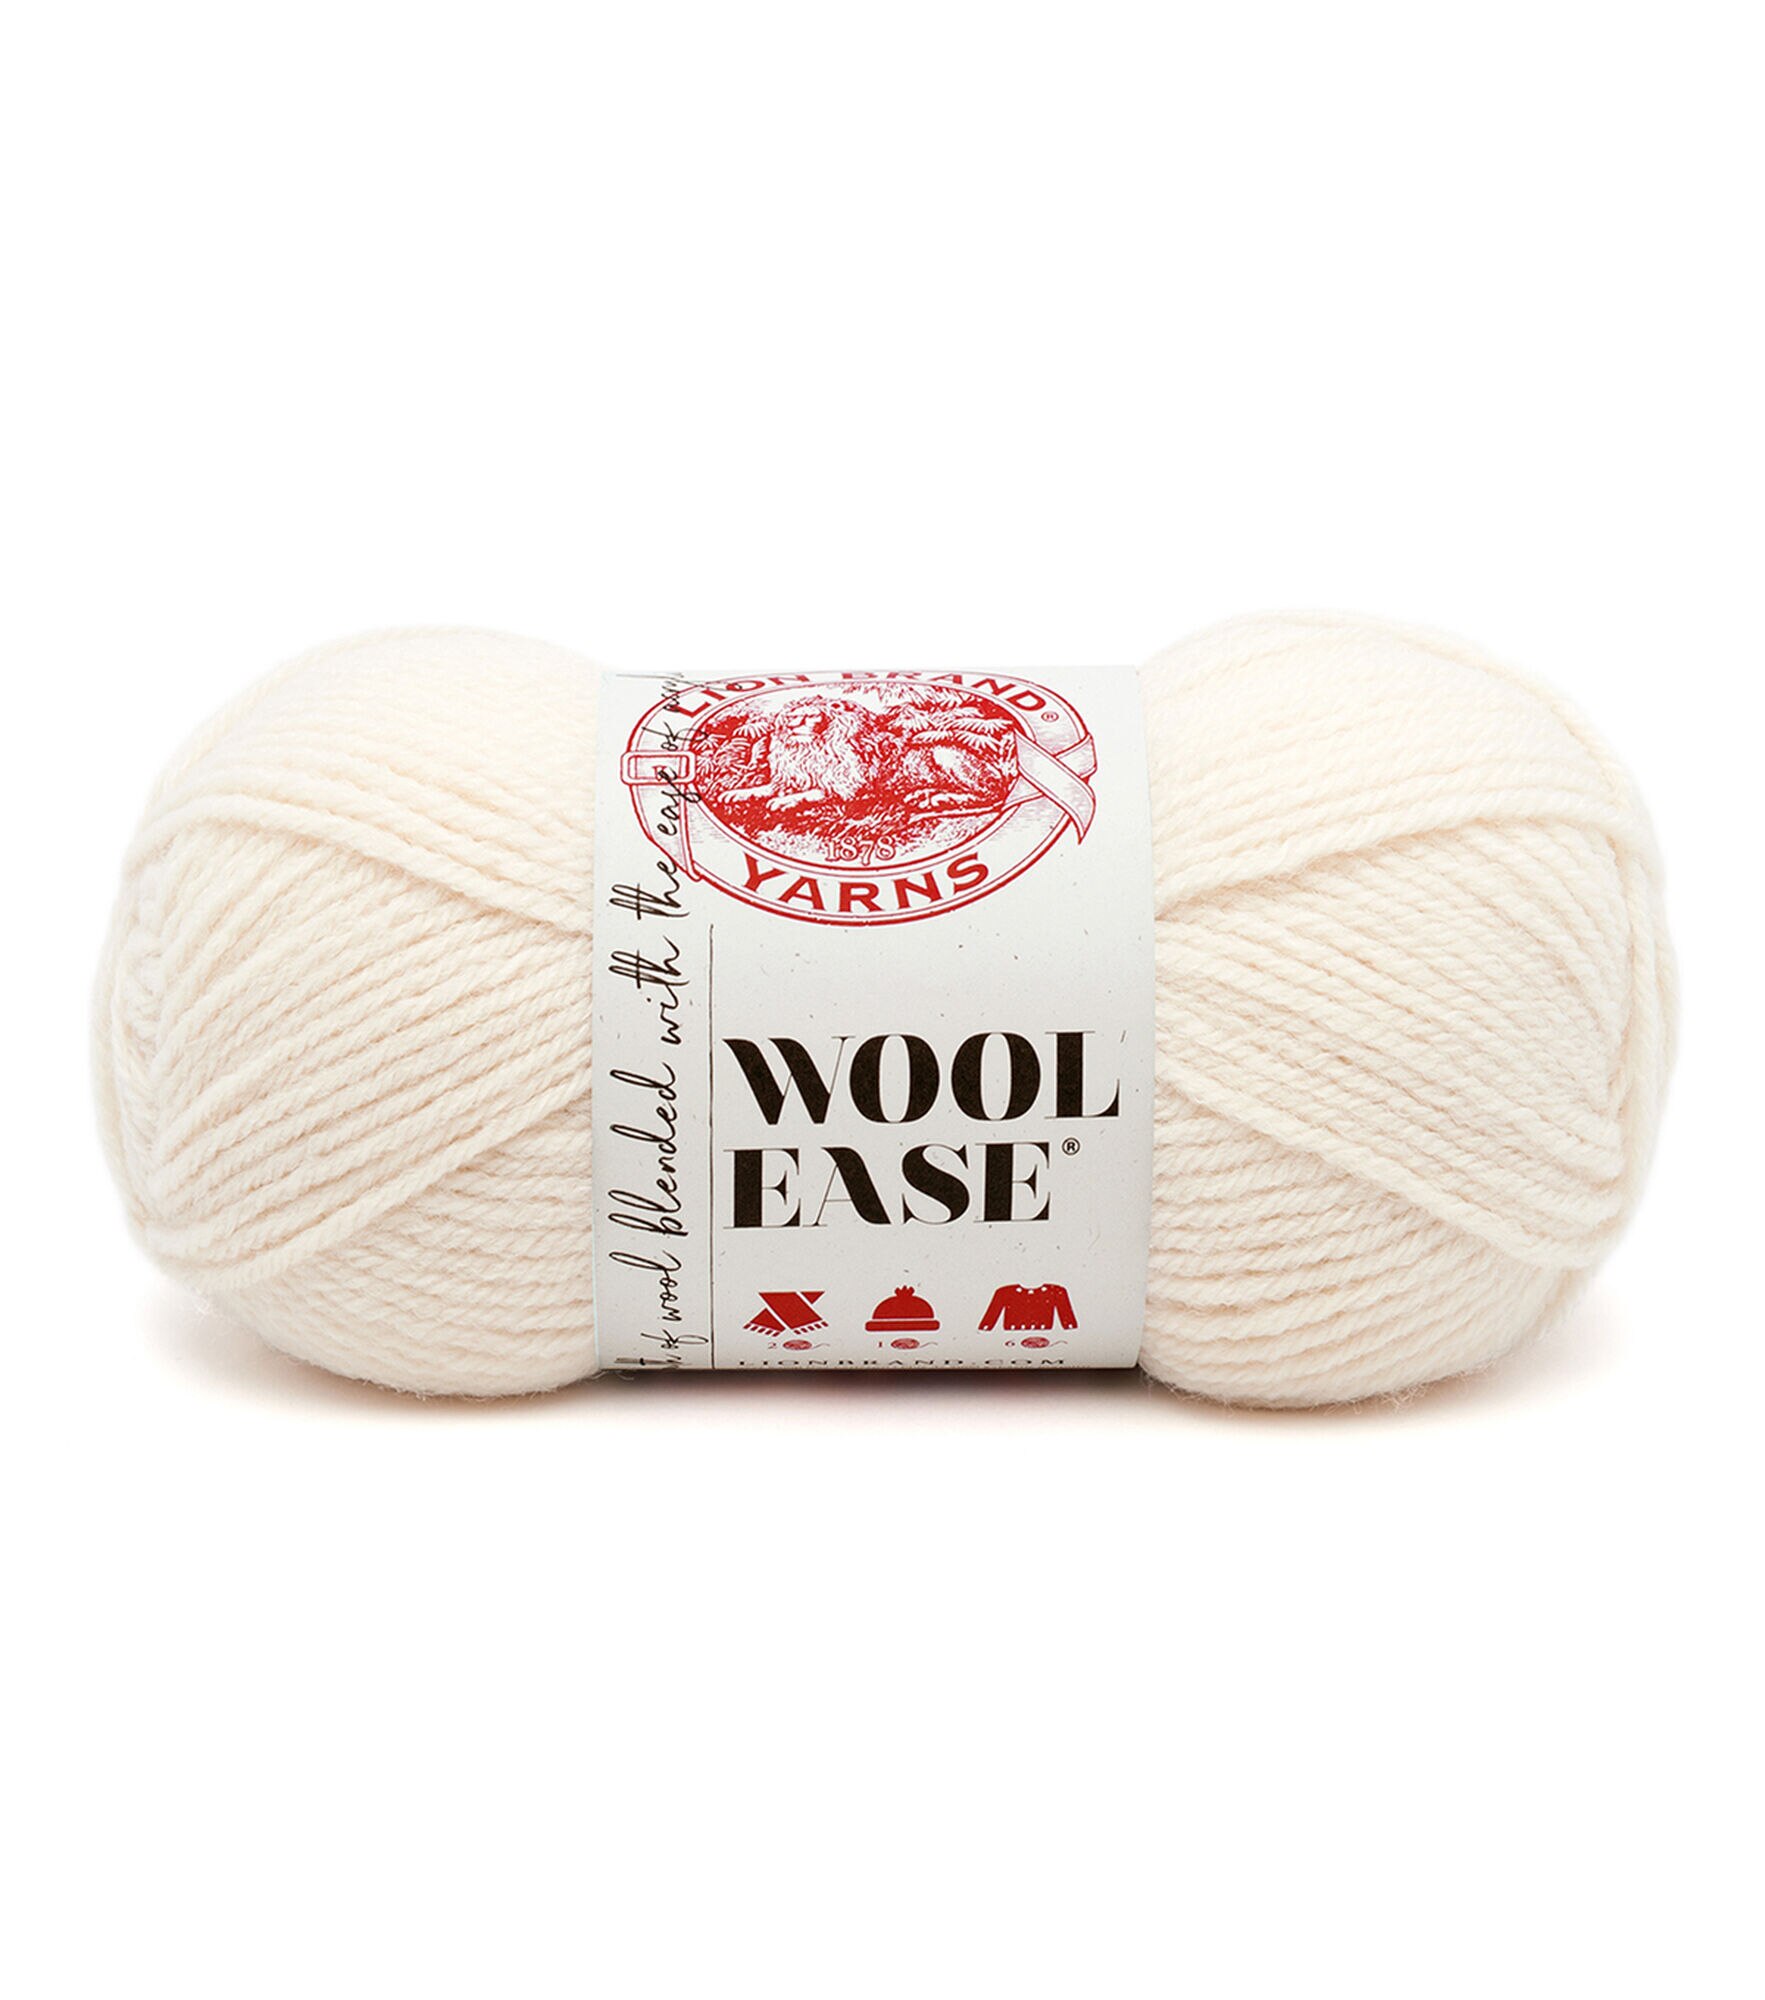 Lion Brand Wool Ease Yarn Oxford Grey